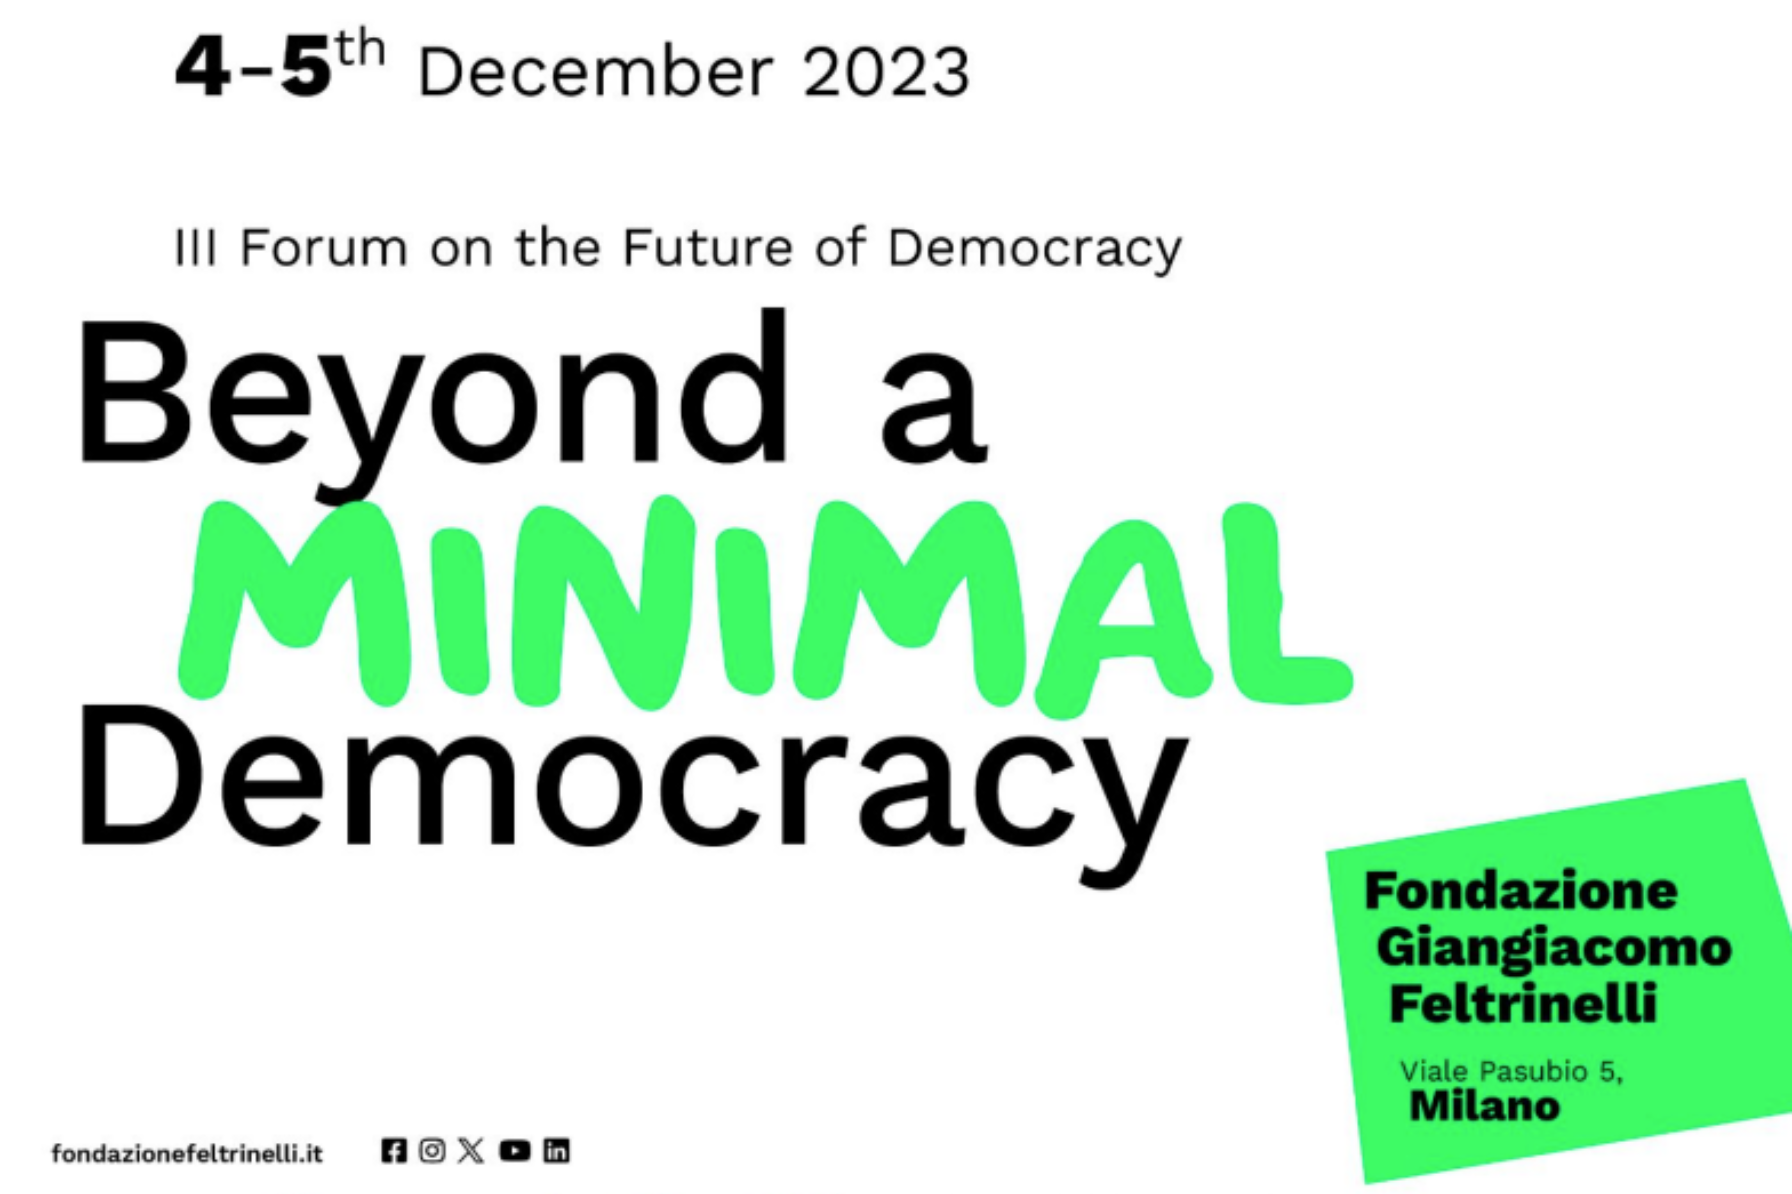 “Oltre una Democrazia Minima” Terzo Forum sul Futuro della Democrazia